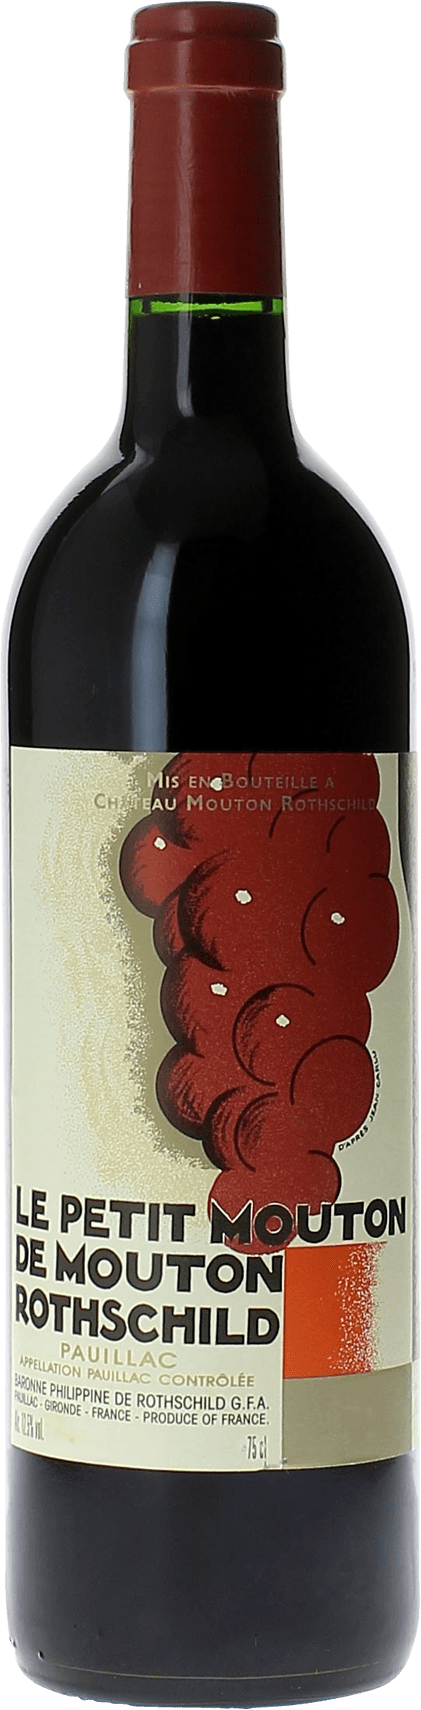 Petit mouton 2019 2nd vin de Mouton Rothschild Pauillac, Bordeaux rouge